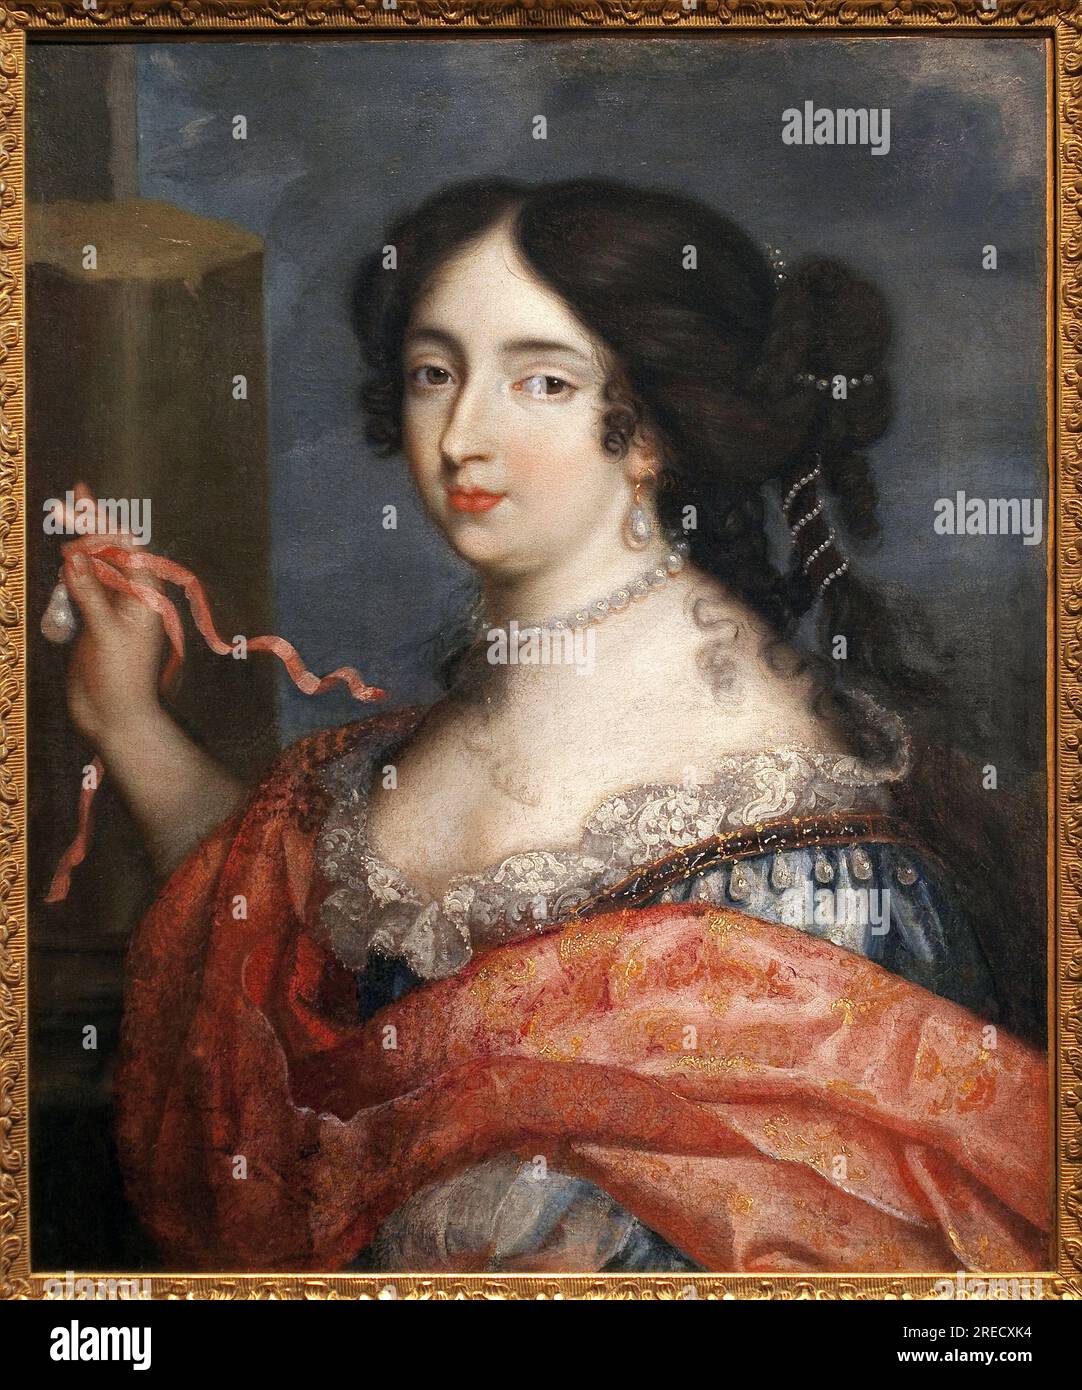 Francoise d'Aubigne (Madame de Maintenon, 1635-1719). Peinture de Pierre i Mignard, dit le Romain (1612-1695), huile sur toile, Art francais, 17e siecle. Musée des Beaux Arts de Niort. Stockfoto